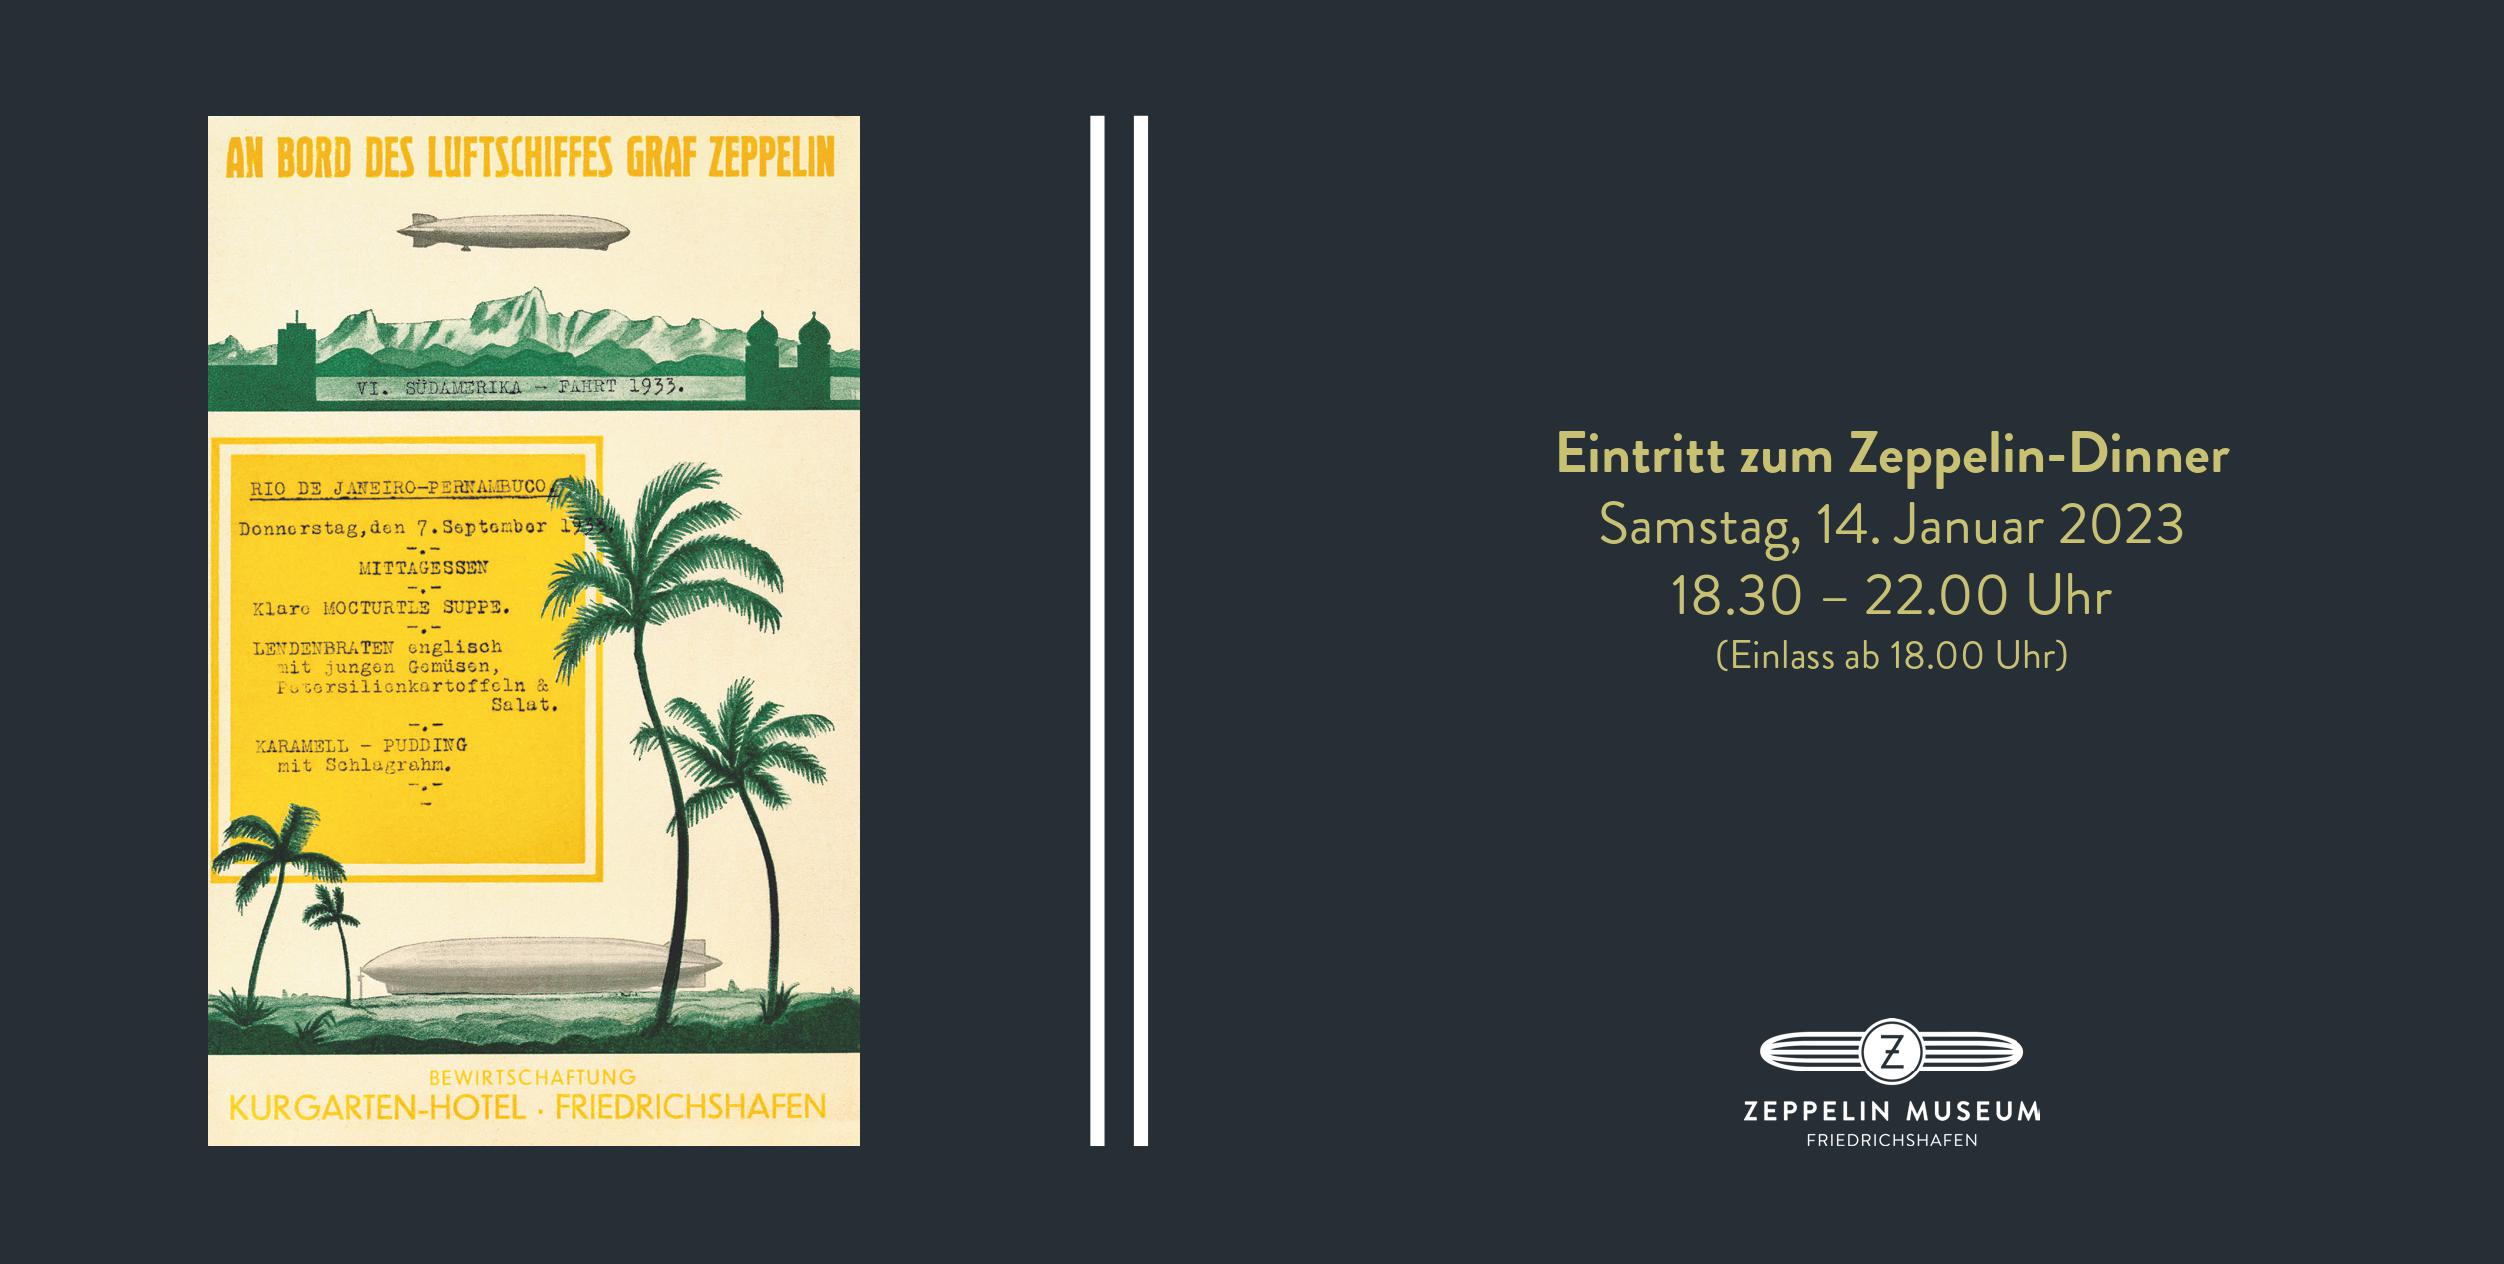 Eintrittskarte zum Zeppelin-Dinner 2023: Die Südamerika-Fahrt 1933 